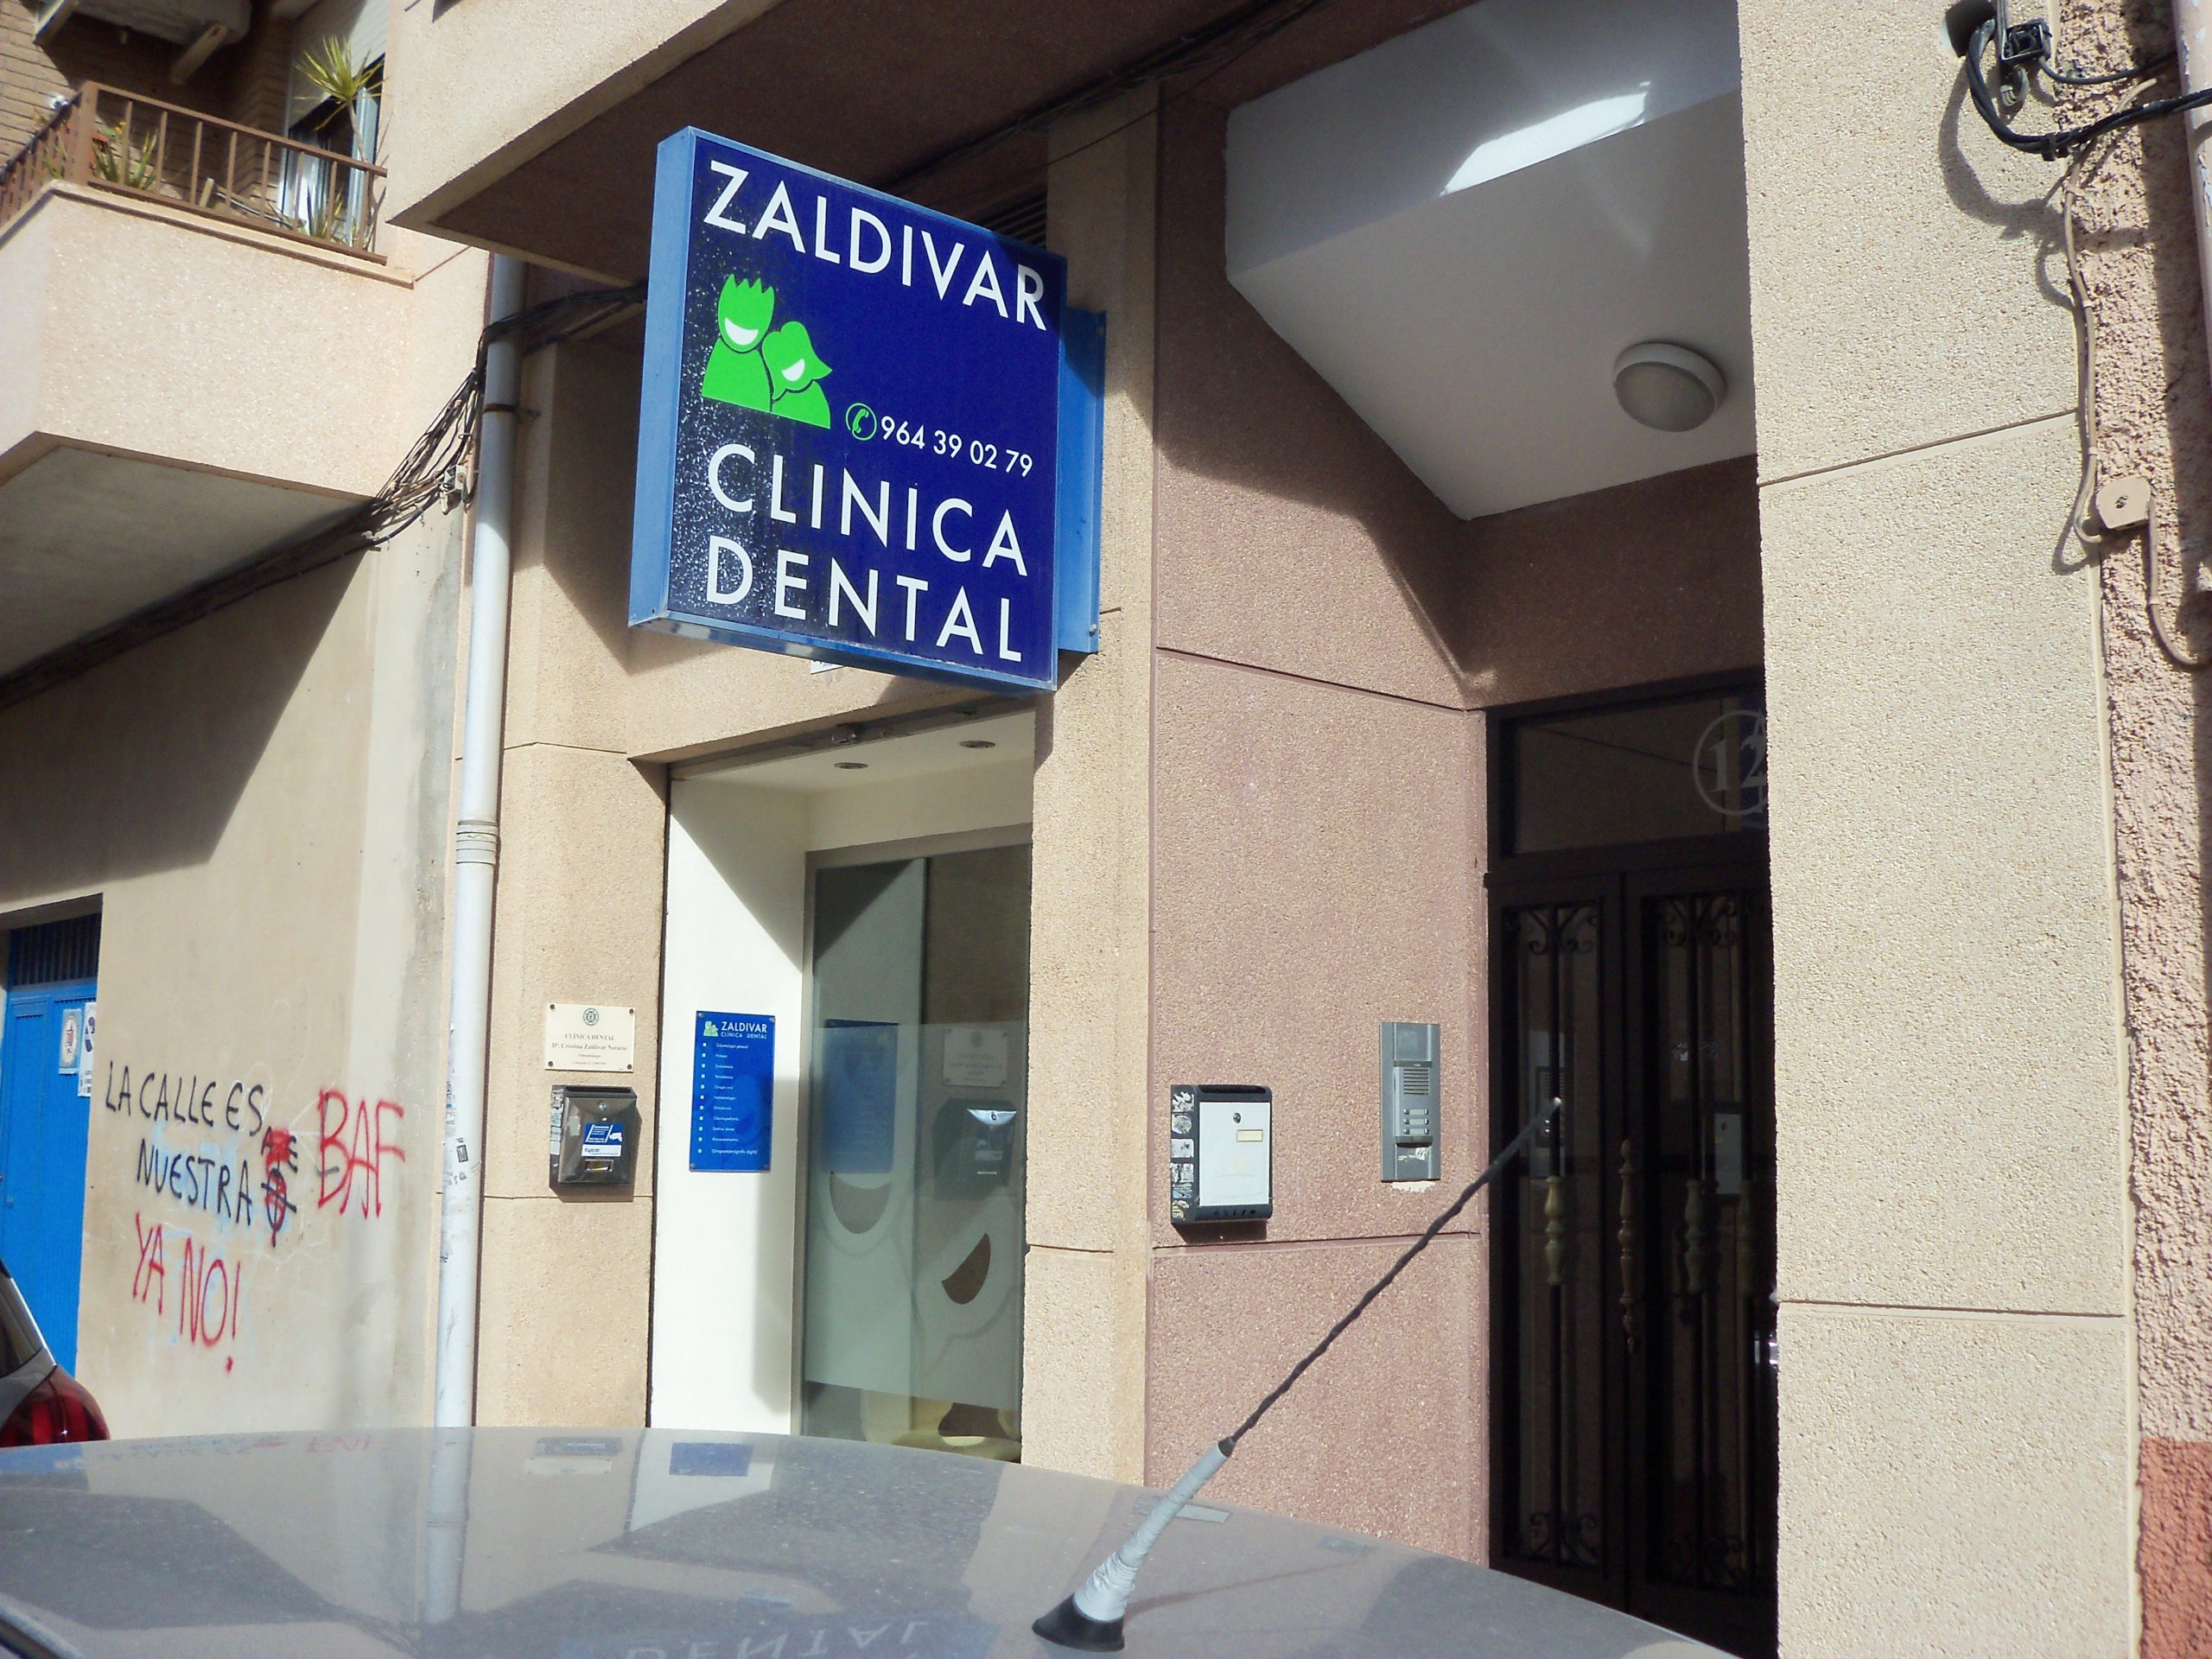 Clinica dental Zaldivar